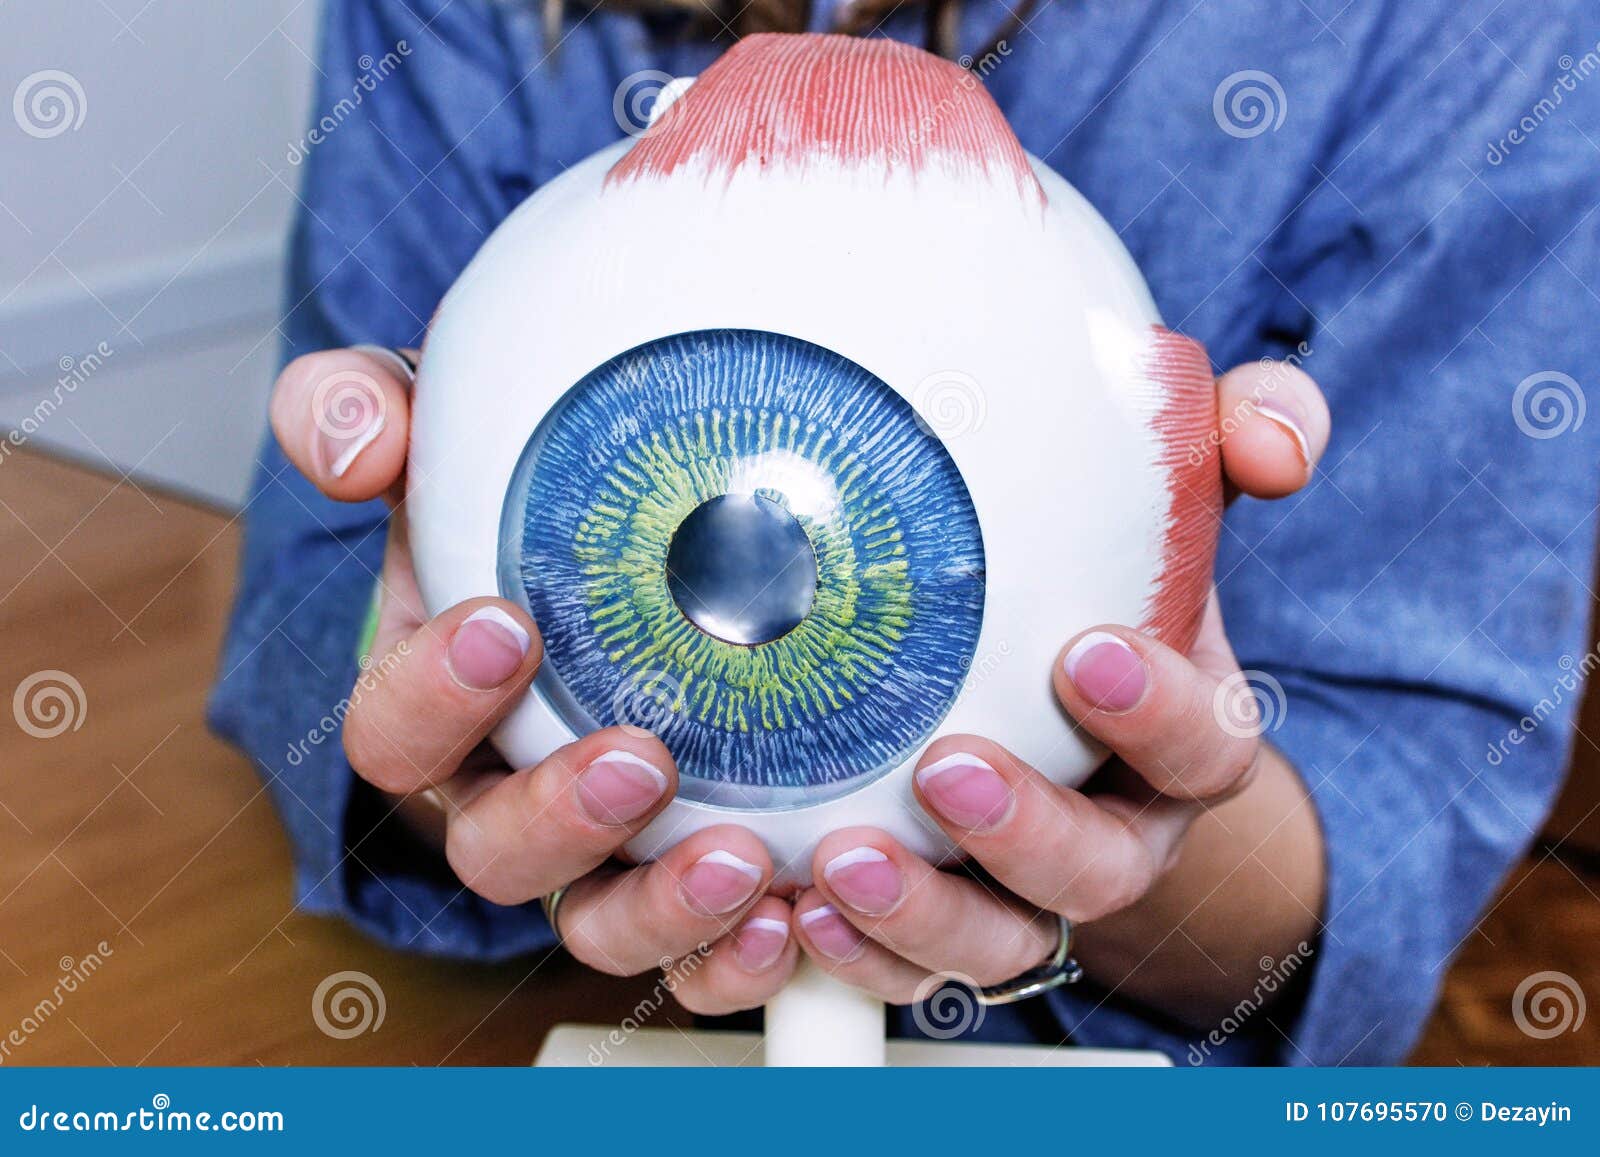 samarbejde byrde Dinkarville Ophthalmology Oculus Sample Closeup Stock Photo - Image of ophthalmologist,  lens: 107695570